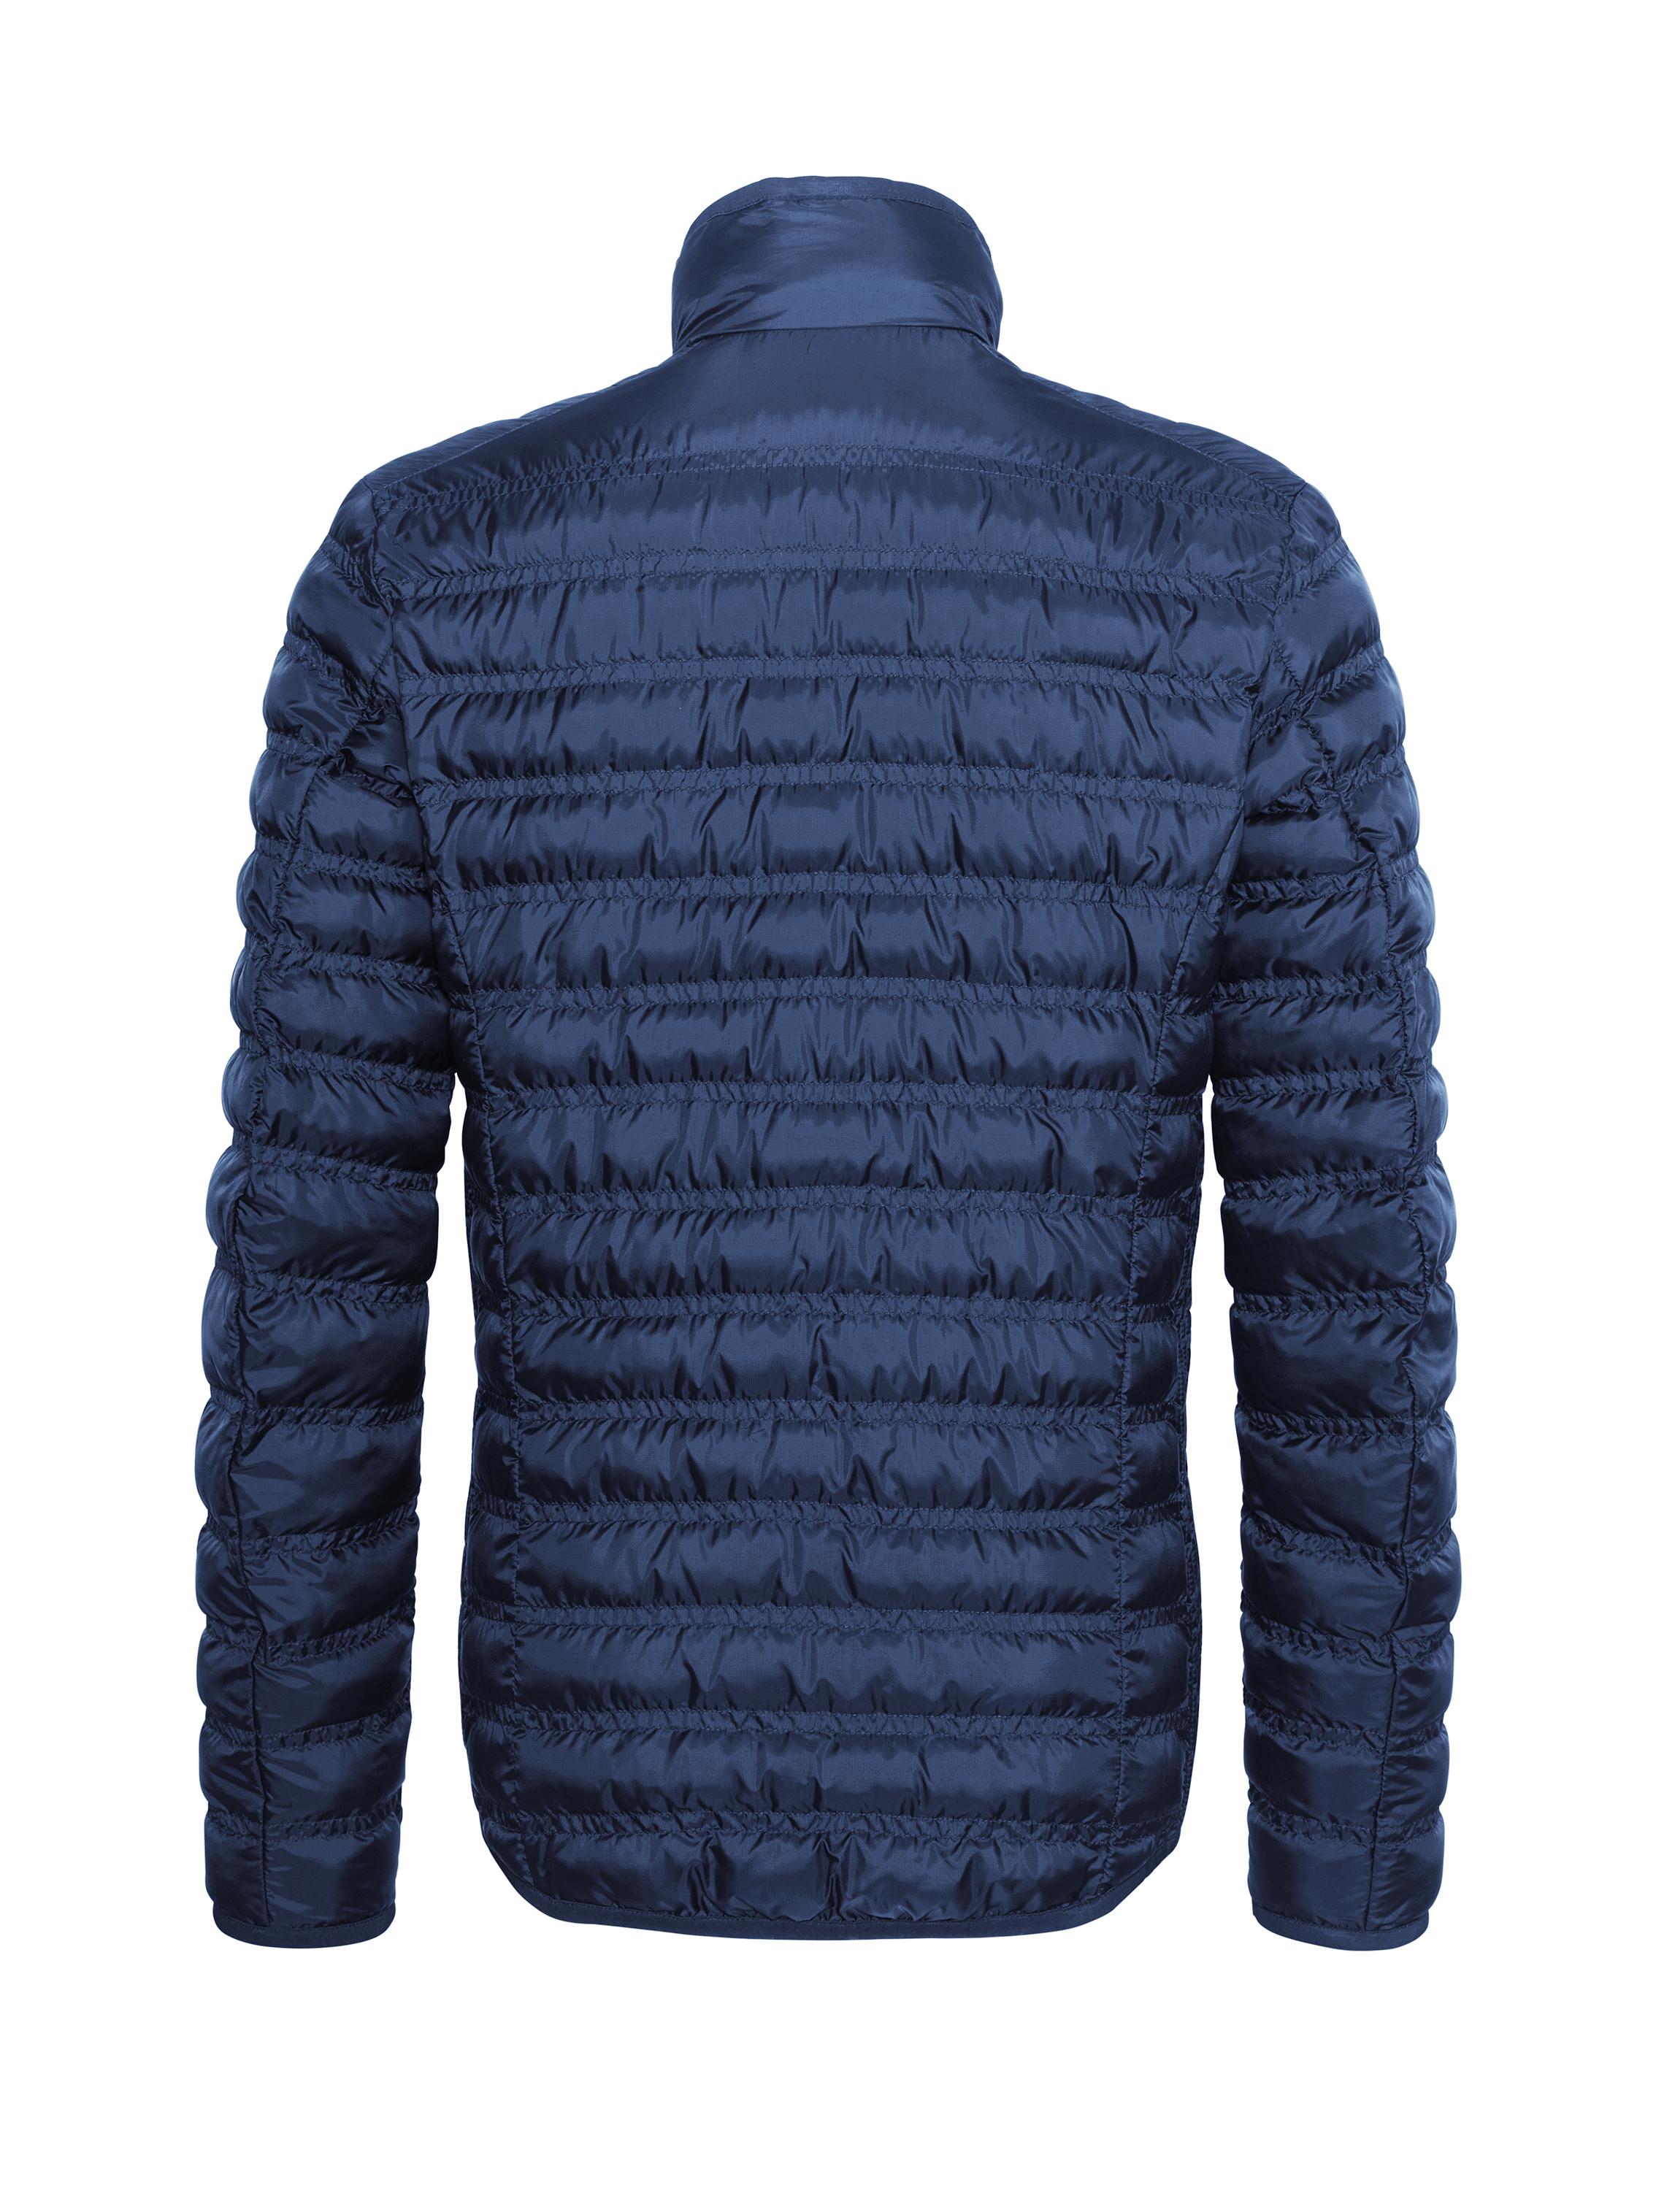 Bogner Synthetic Lightweight Ski Jacket Stephano in Blue for Men - Lyst